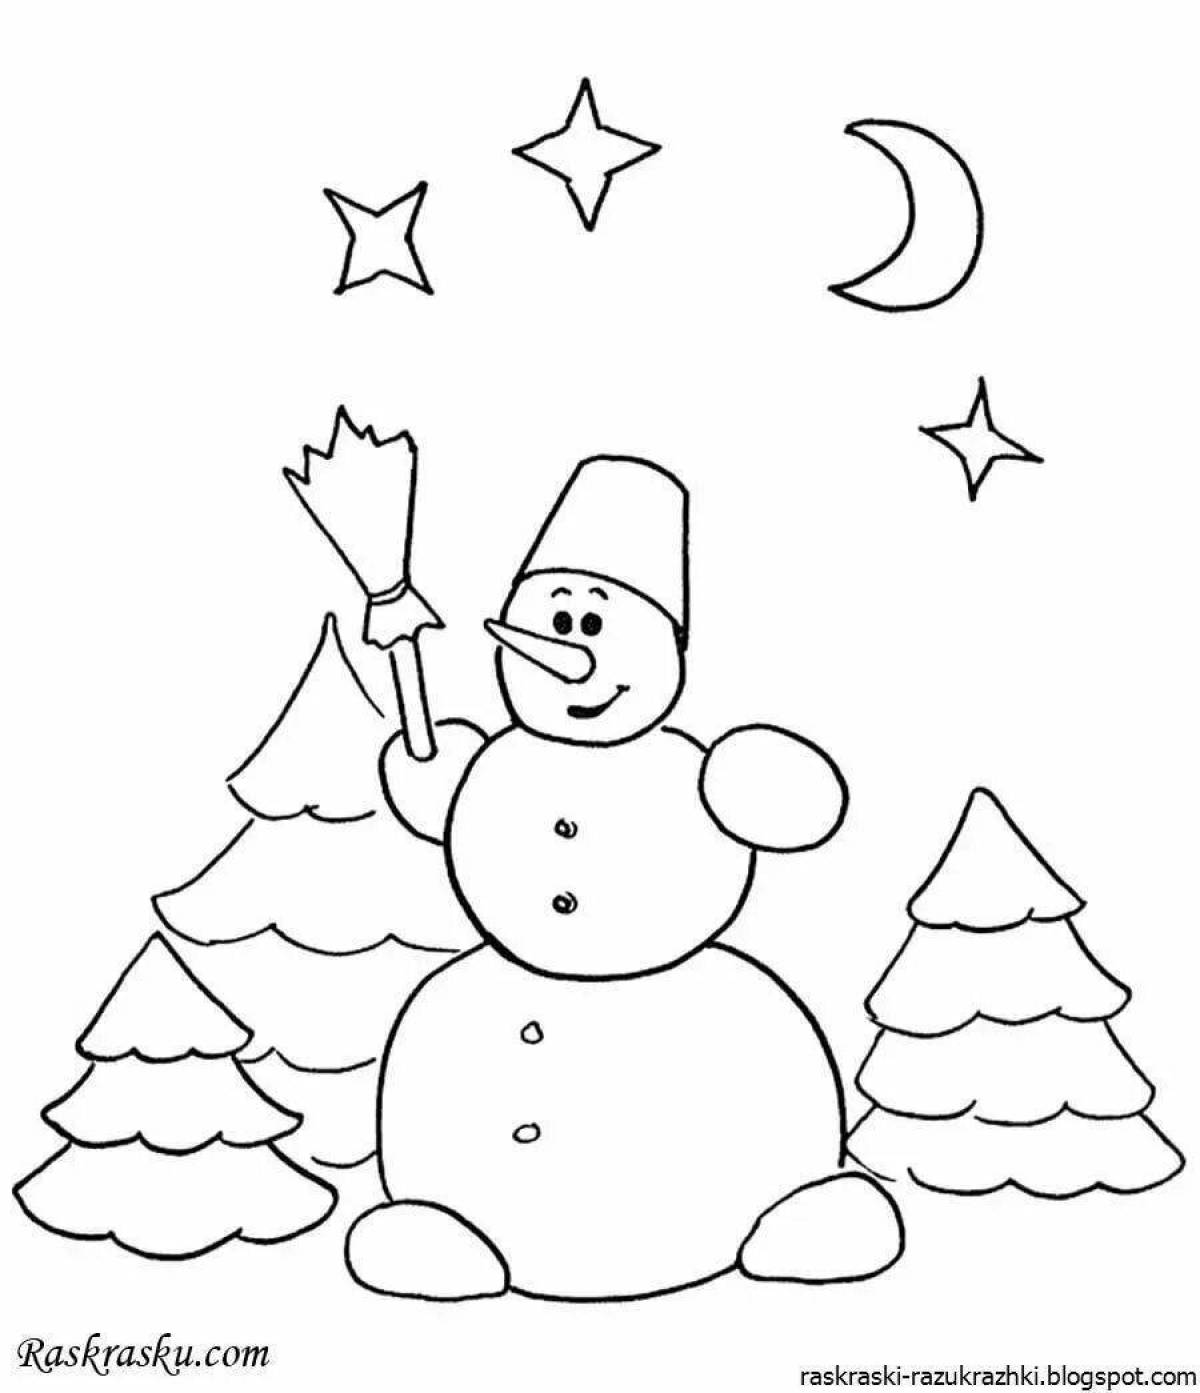 Яркая открытка-раскраска снеговик